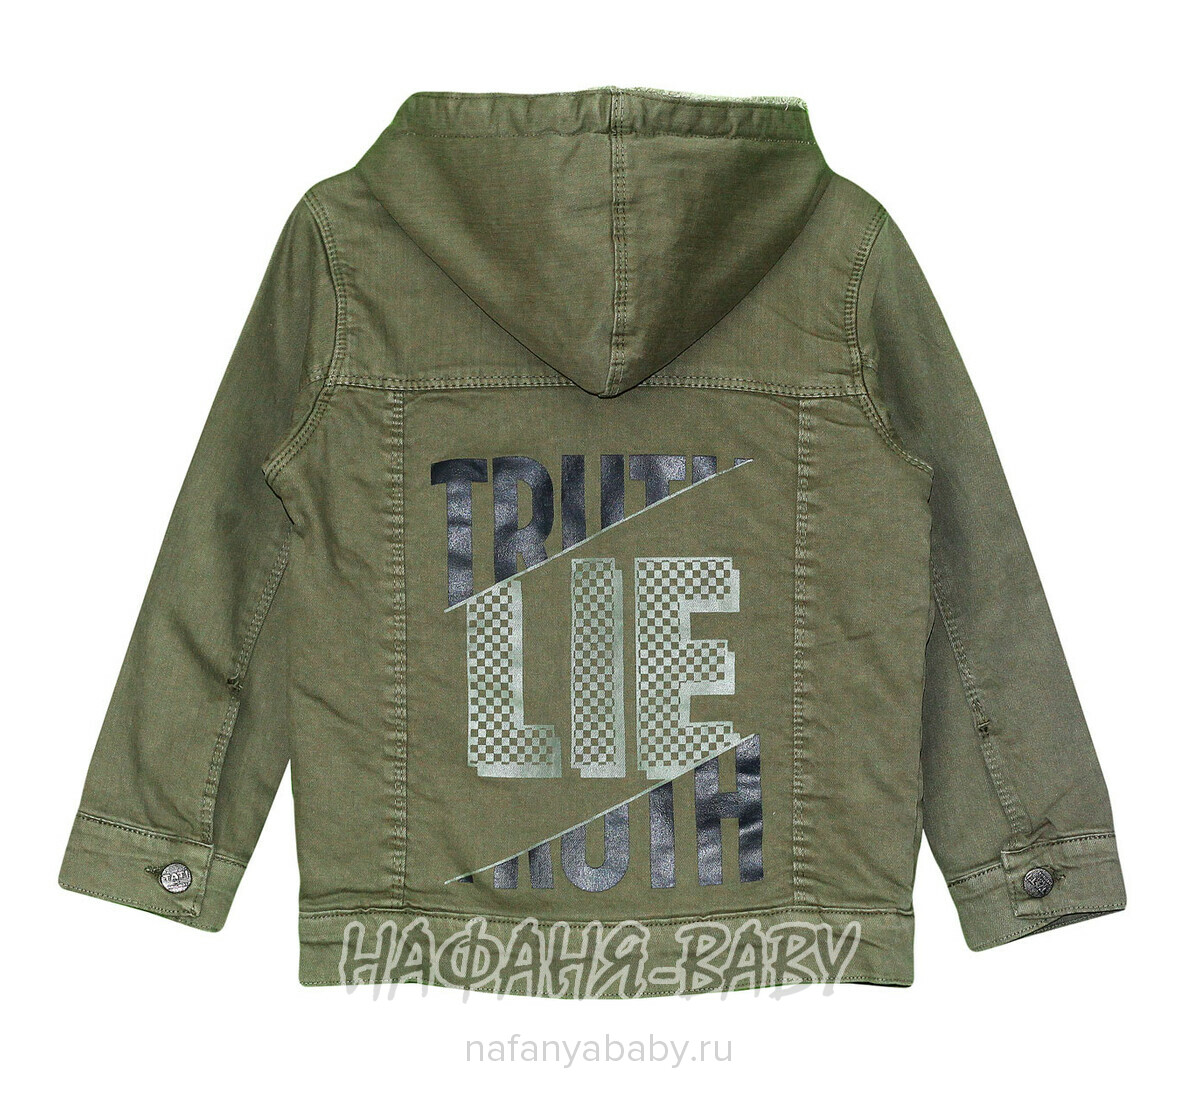 Джинсовая утепленная куртка TATI Jeans арт: 9337, 1-4 года, 5-9 лет, цвет темный хаки, оптом Турция